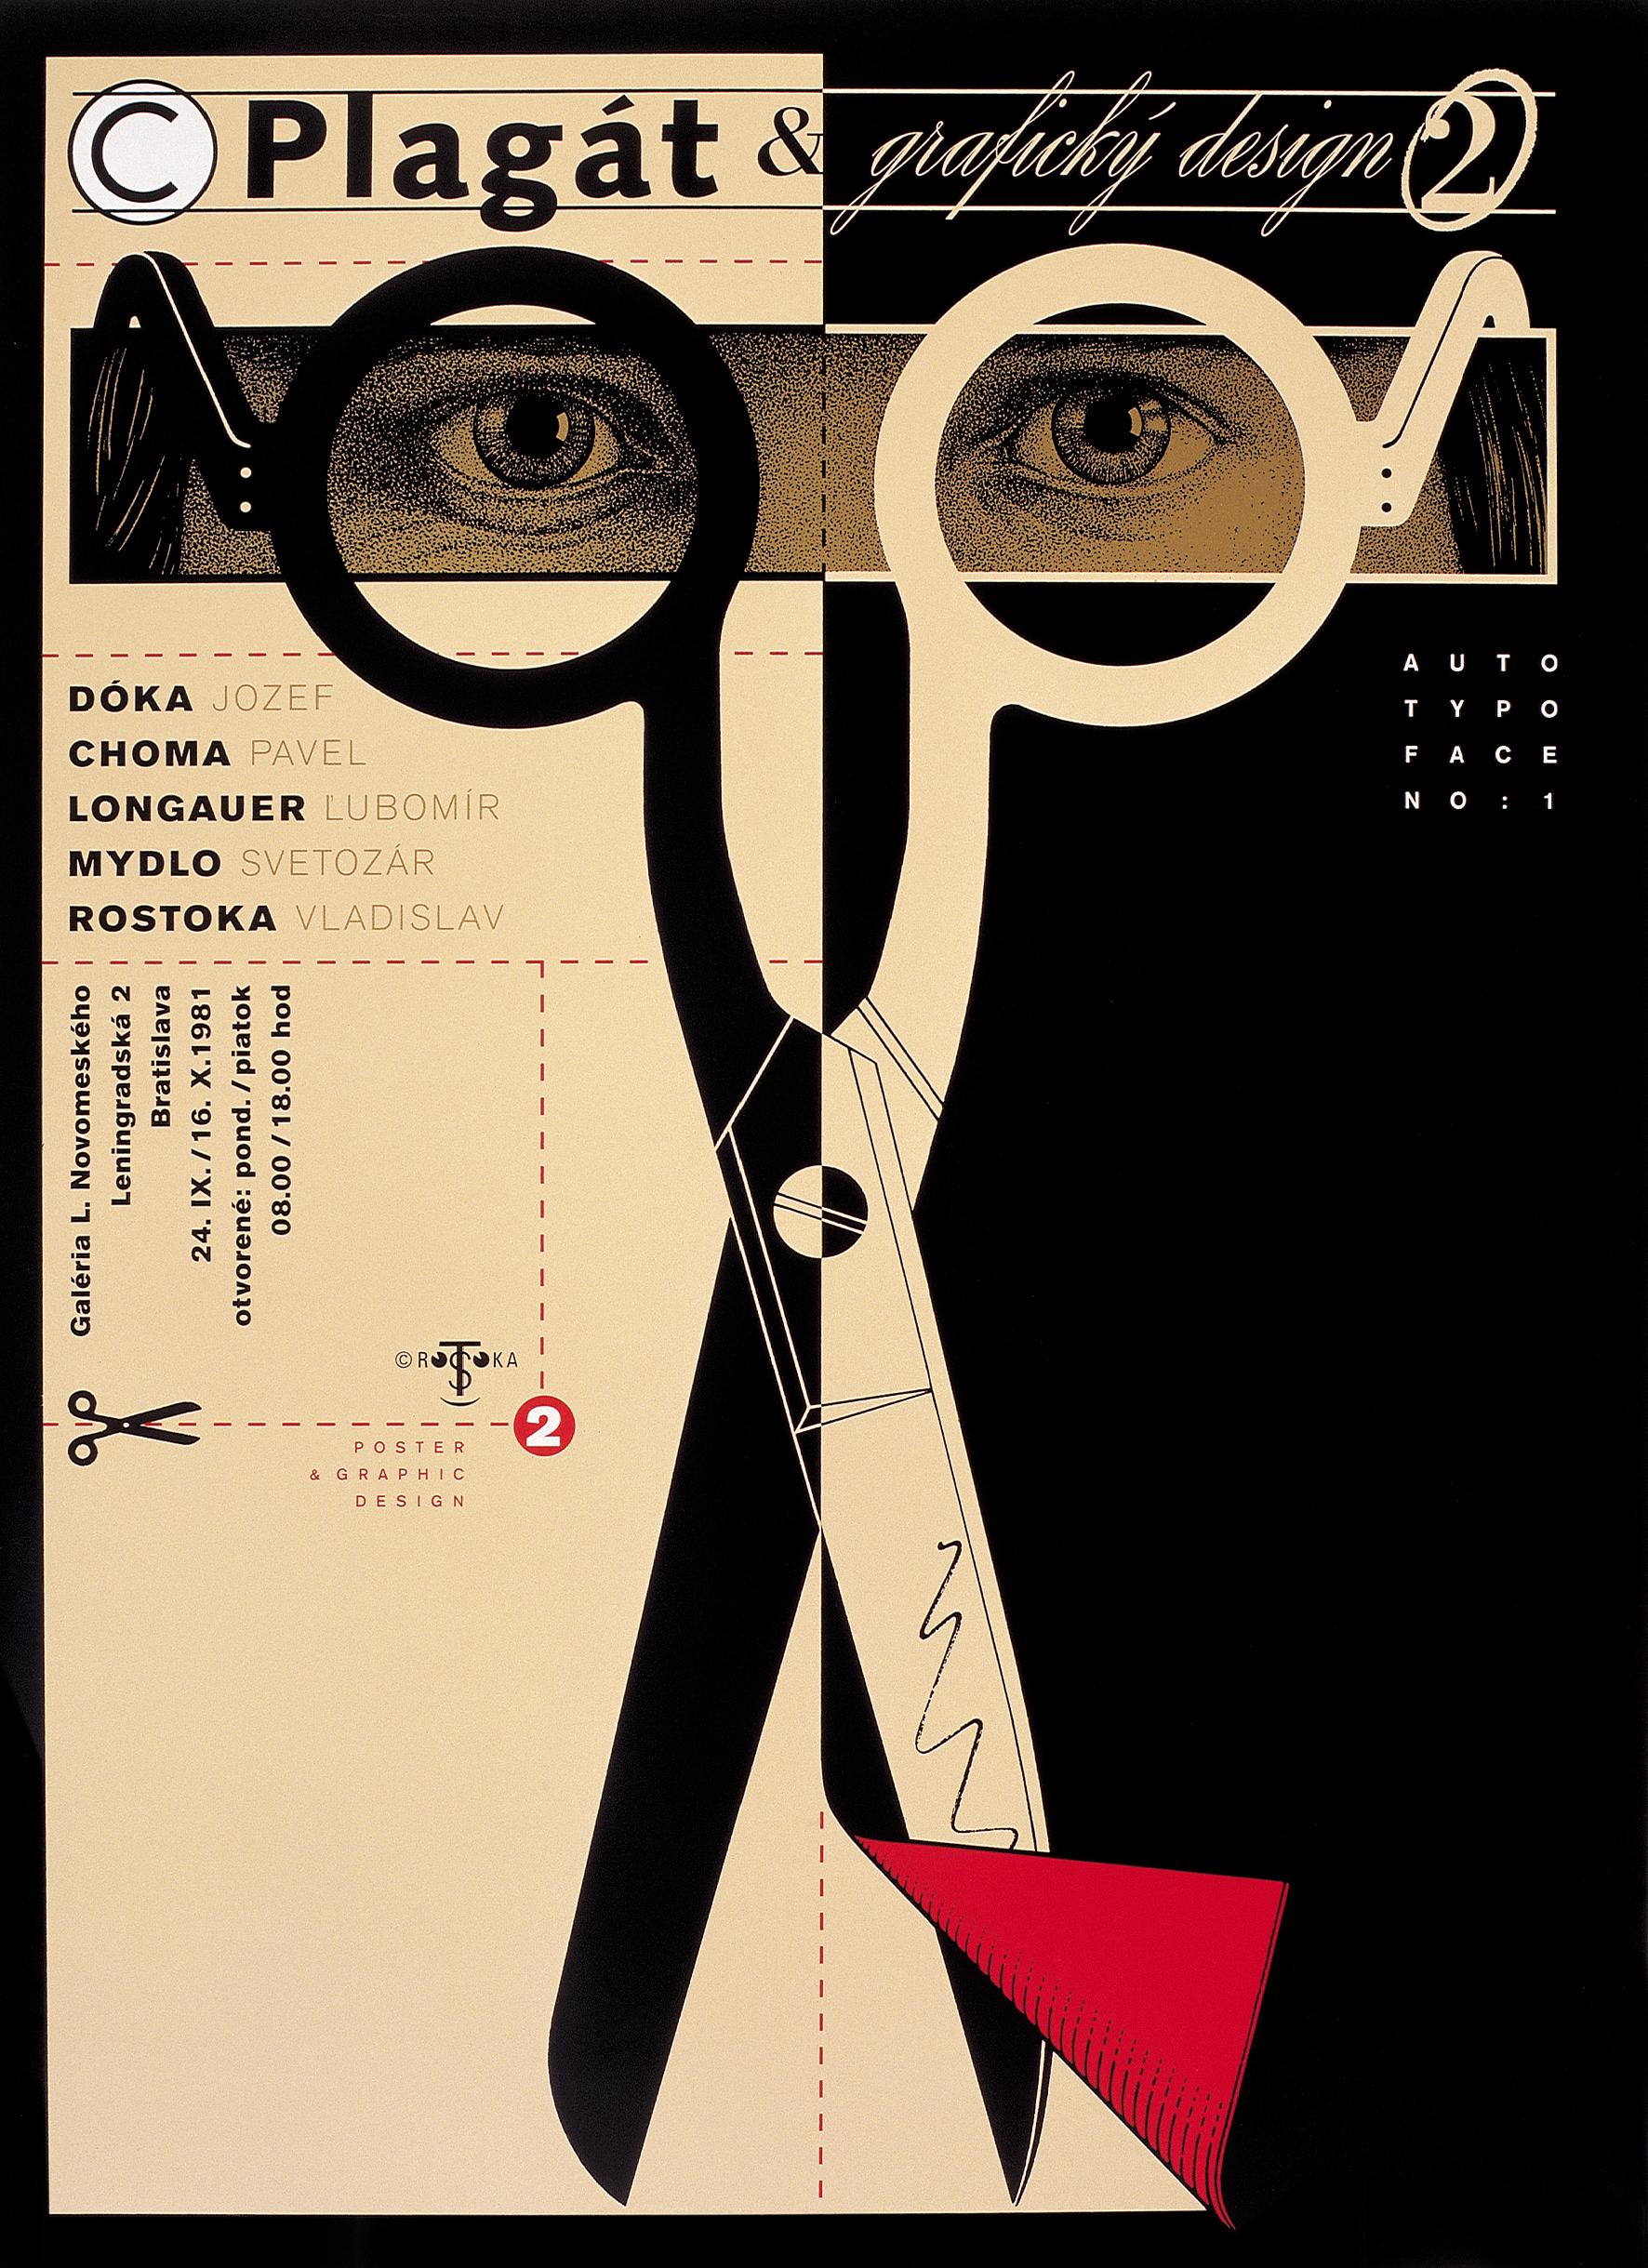 Výstavný plagát Plagát a grafický design, 1981